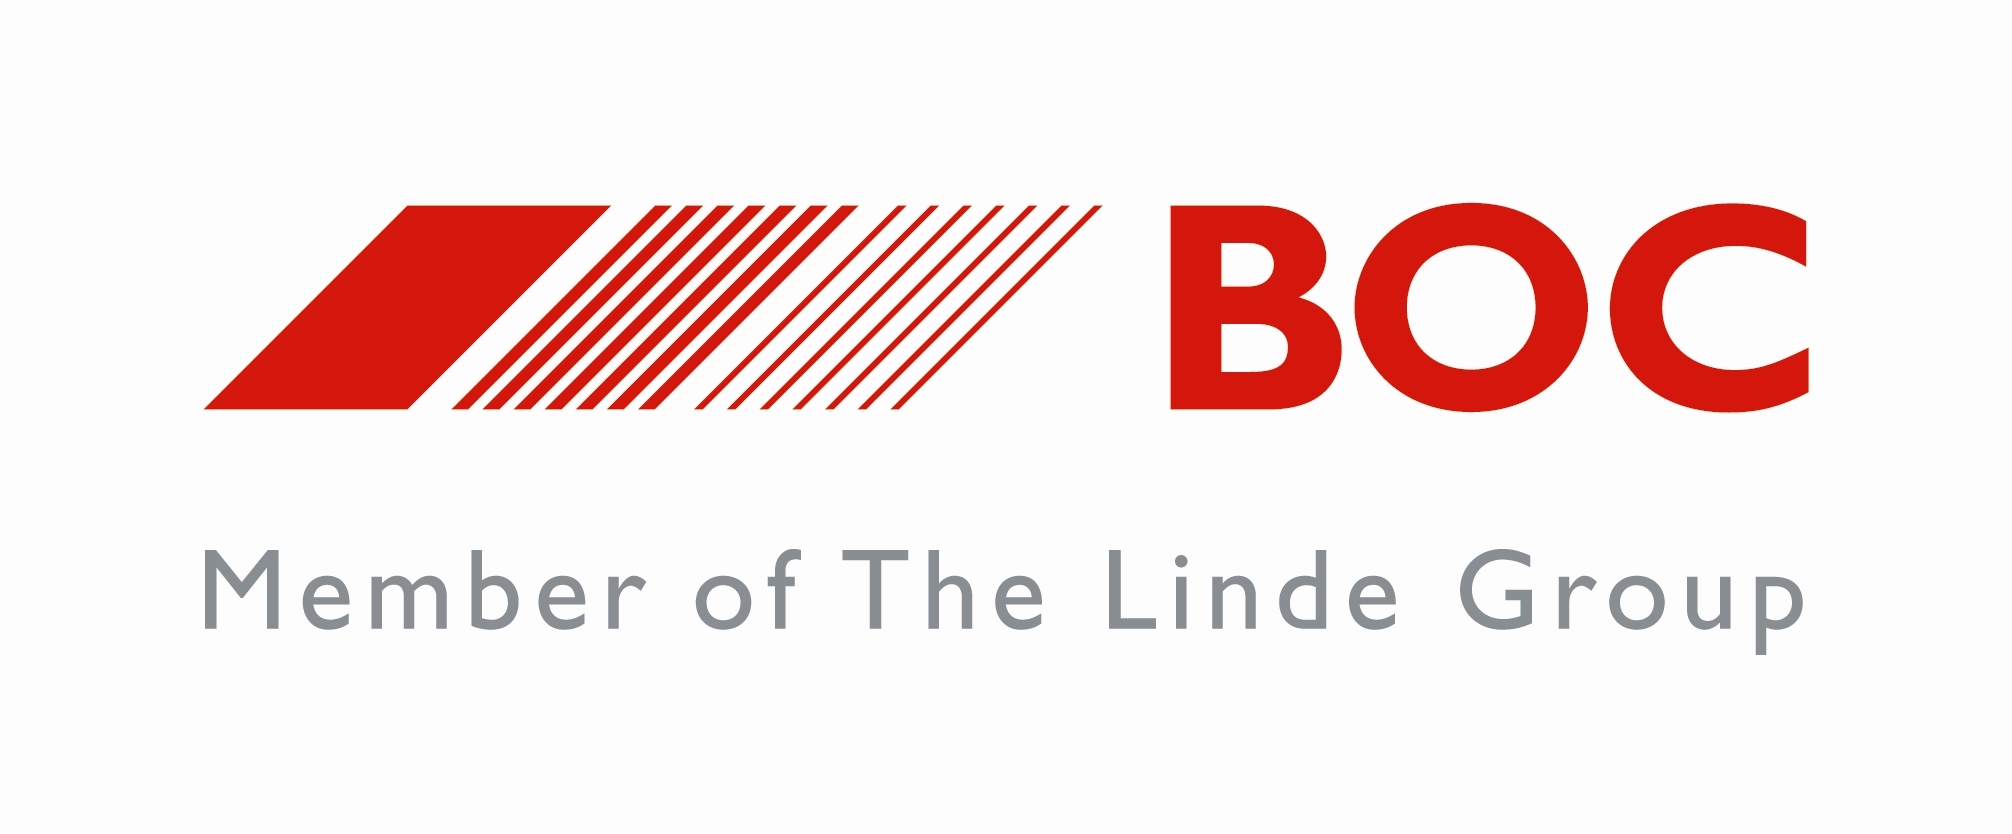 boc-logo.jpg